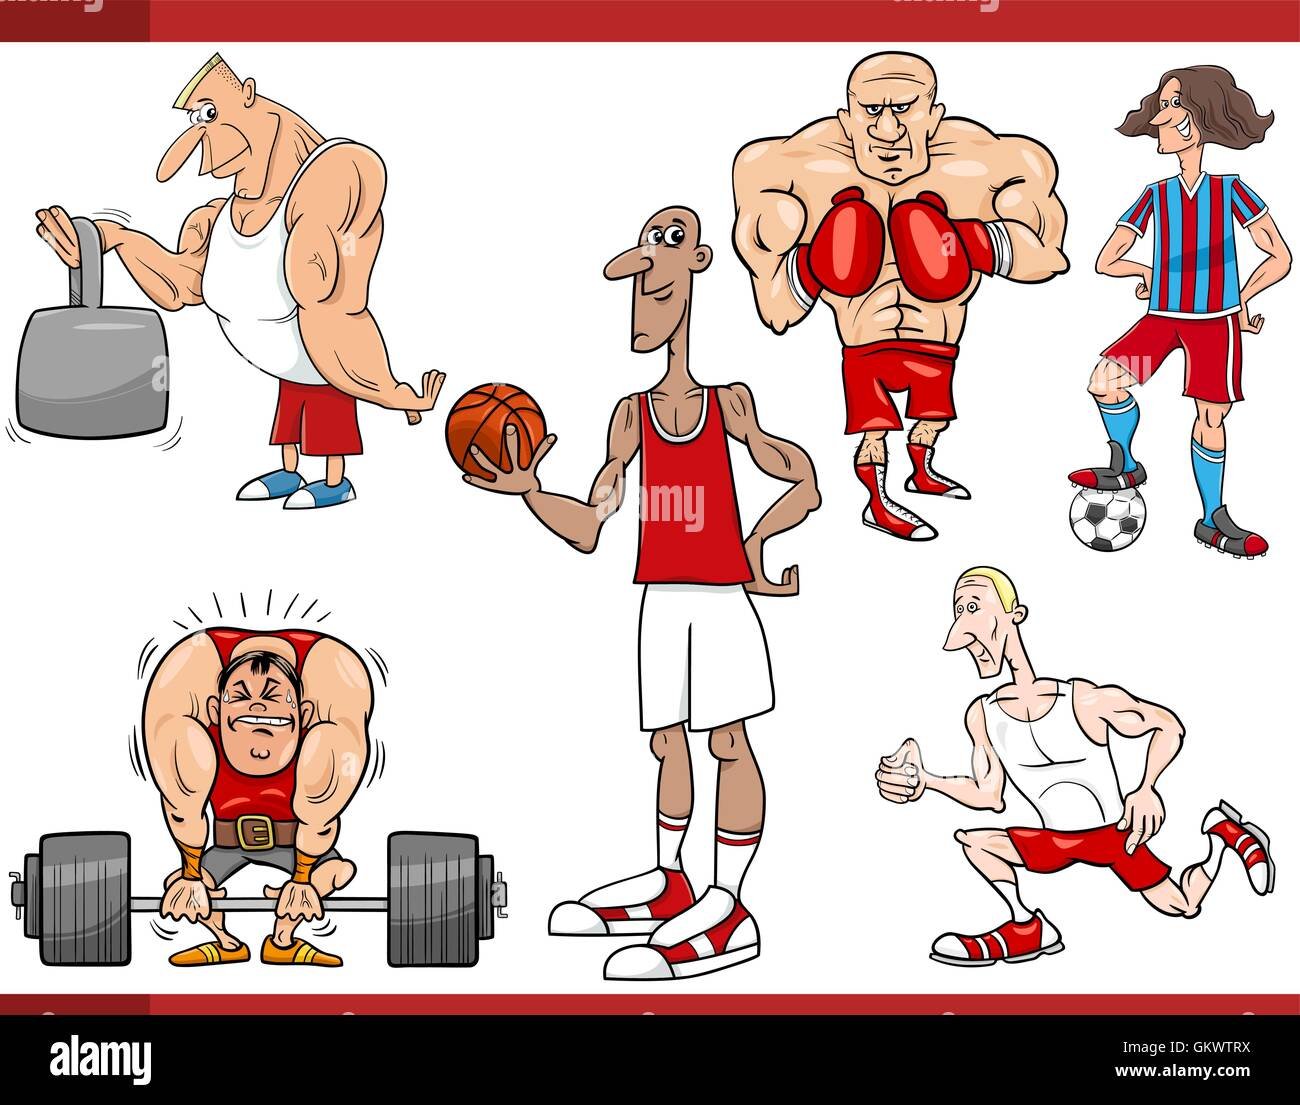 Прикольные рисунки про спорт